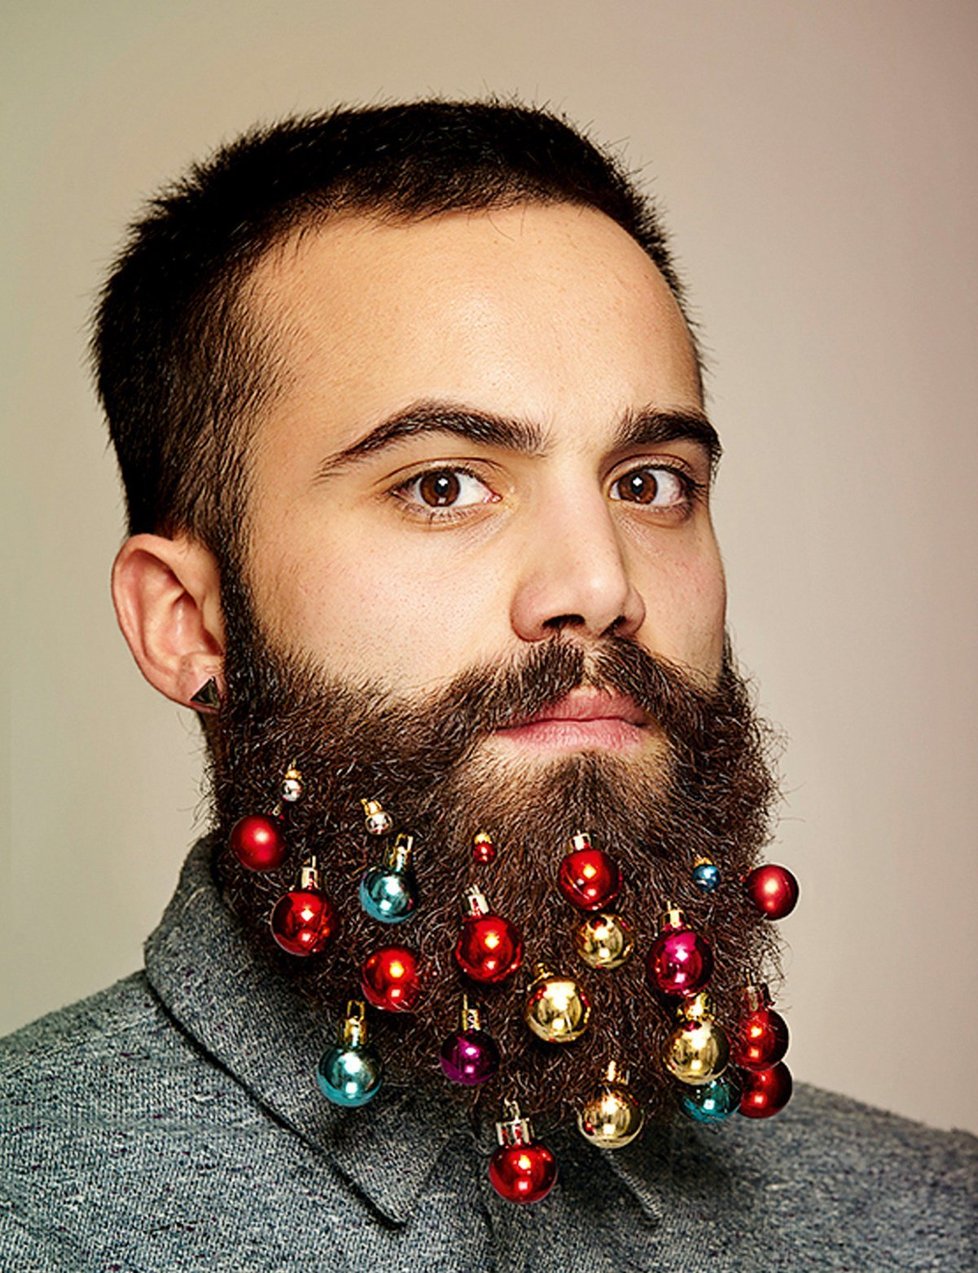 Vánoční ozdoby do vousů jsou pro hipstera ráj.